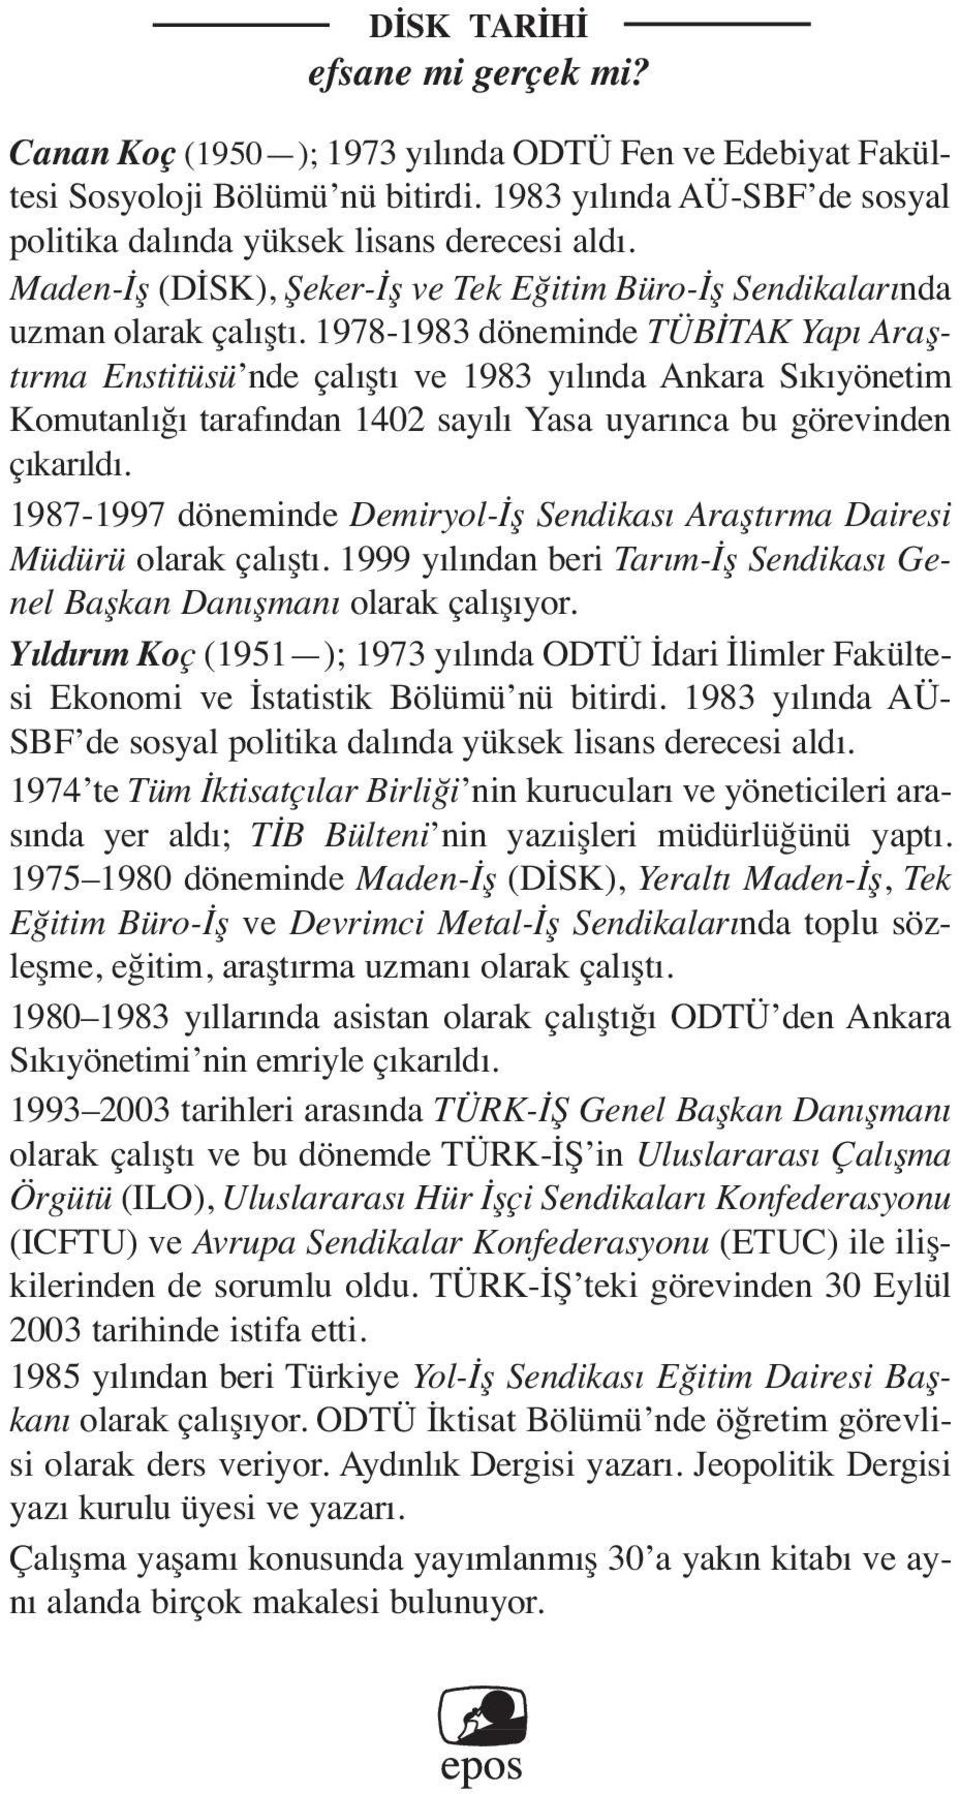 1978-1983 döneminde TÜBİTAK Yapı Araştırma Enstitüsü nde çalıştı ve 1983 yılında Ankara Sıkıyönetim Komutanlığı tarafından 1402 sayılı Yasa uyarınca bu görevinden çıkarıldı.